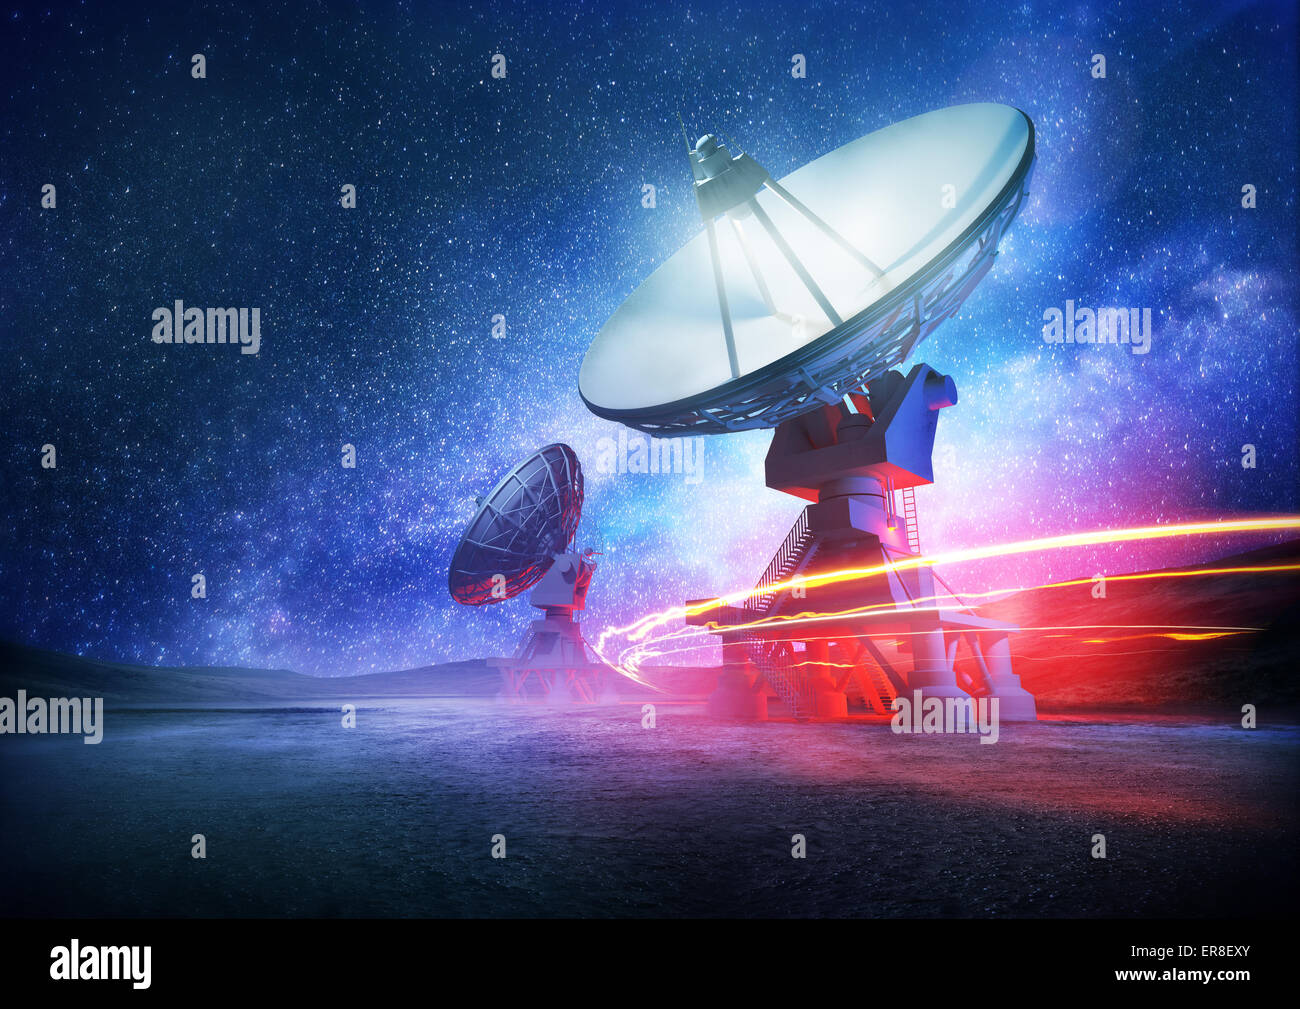 Astronomie Weltraum-Radioteleskop Arrays in der Nacht in den Raum zeigt. Die Milchstraße setzt den Hintergrund. Abbildung. Stockfoto